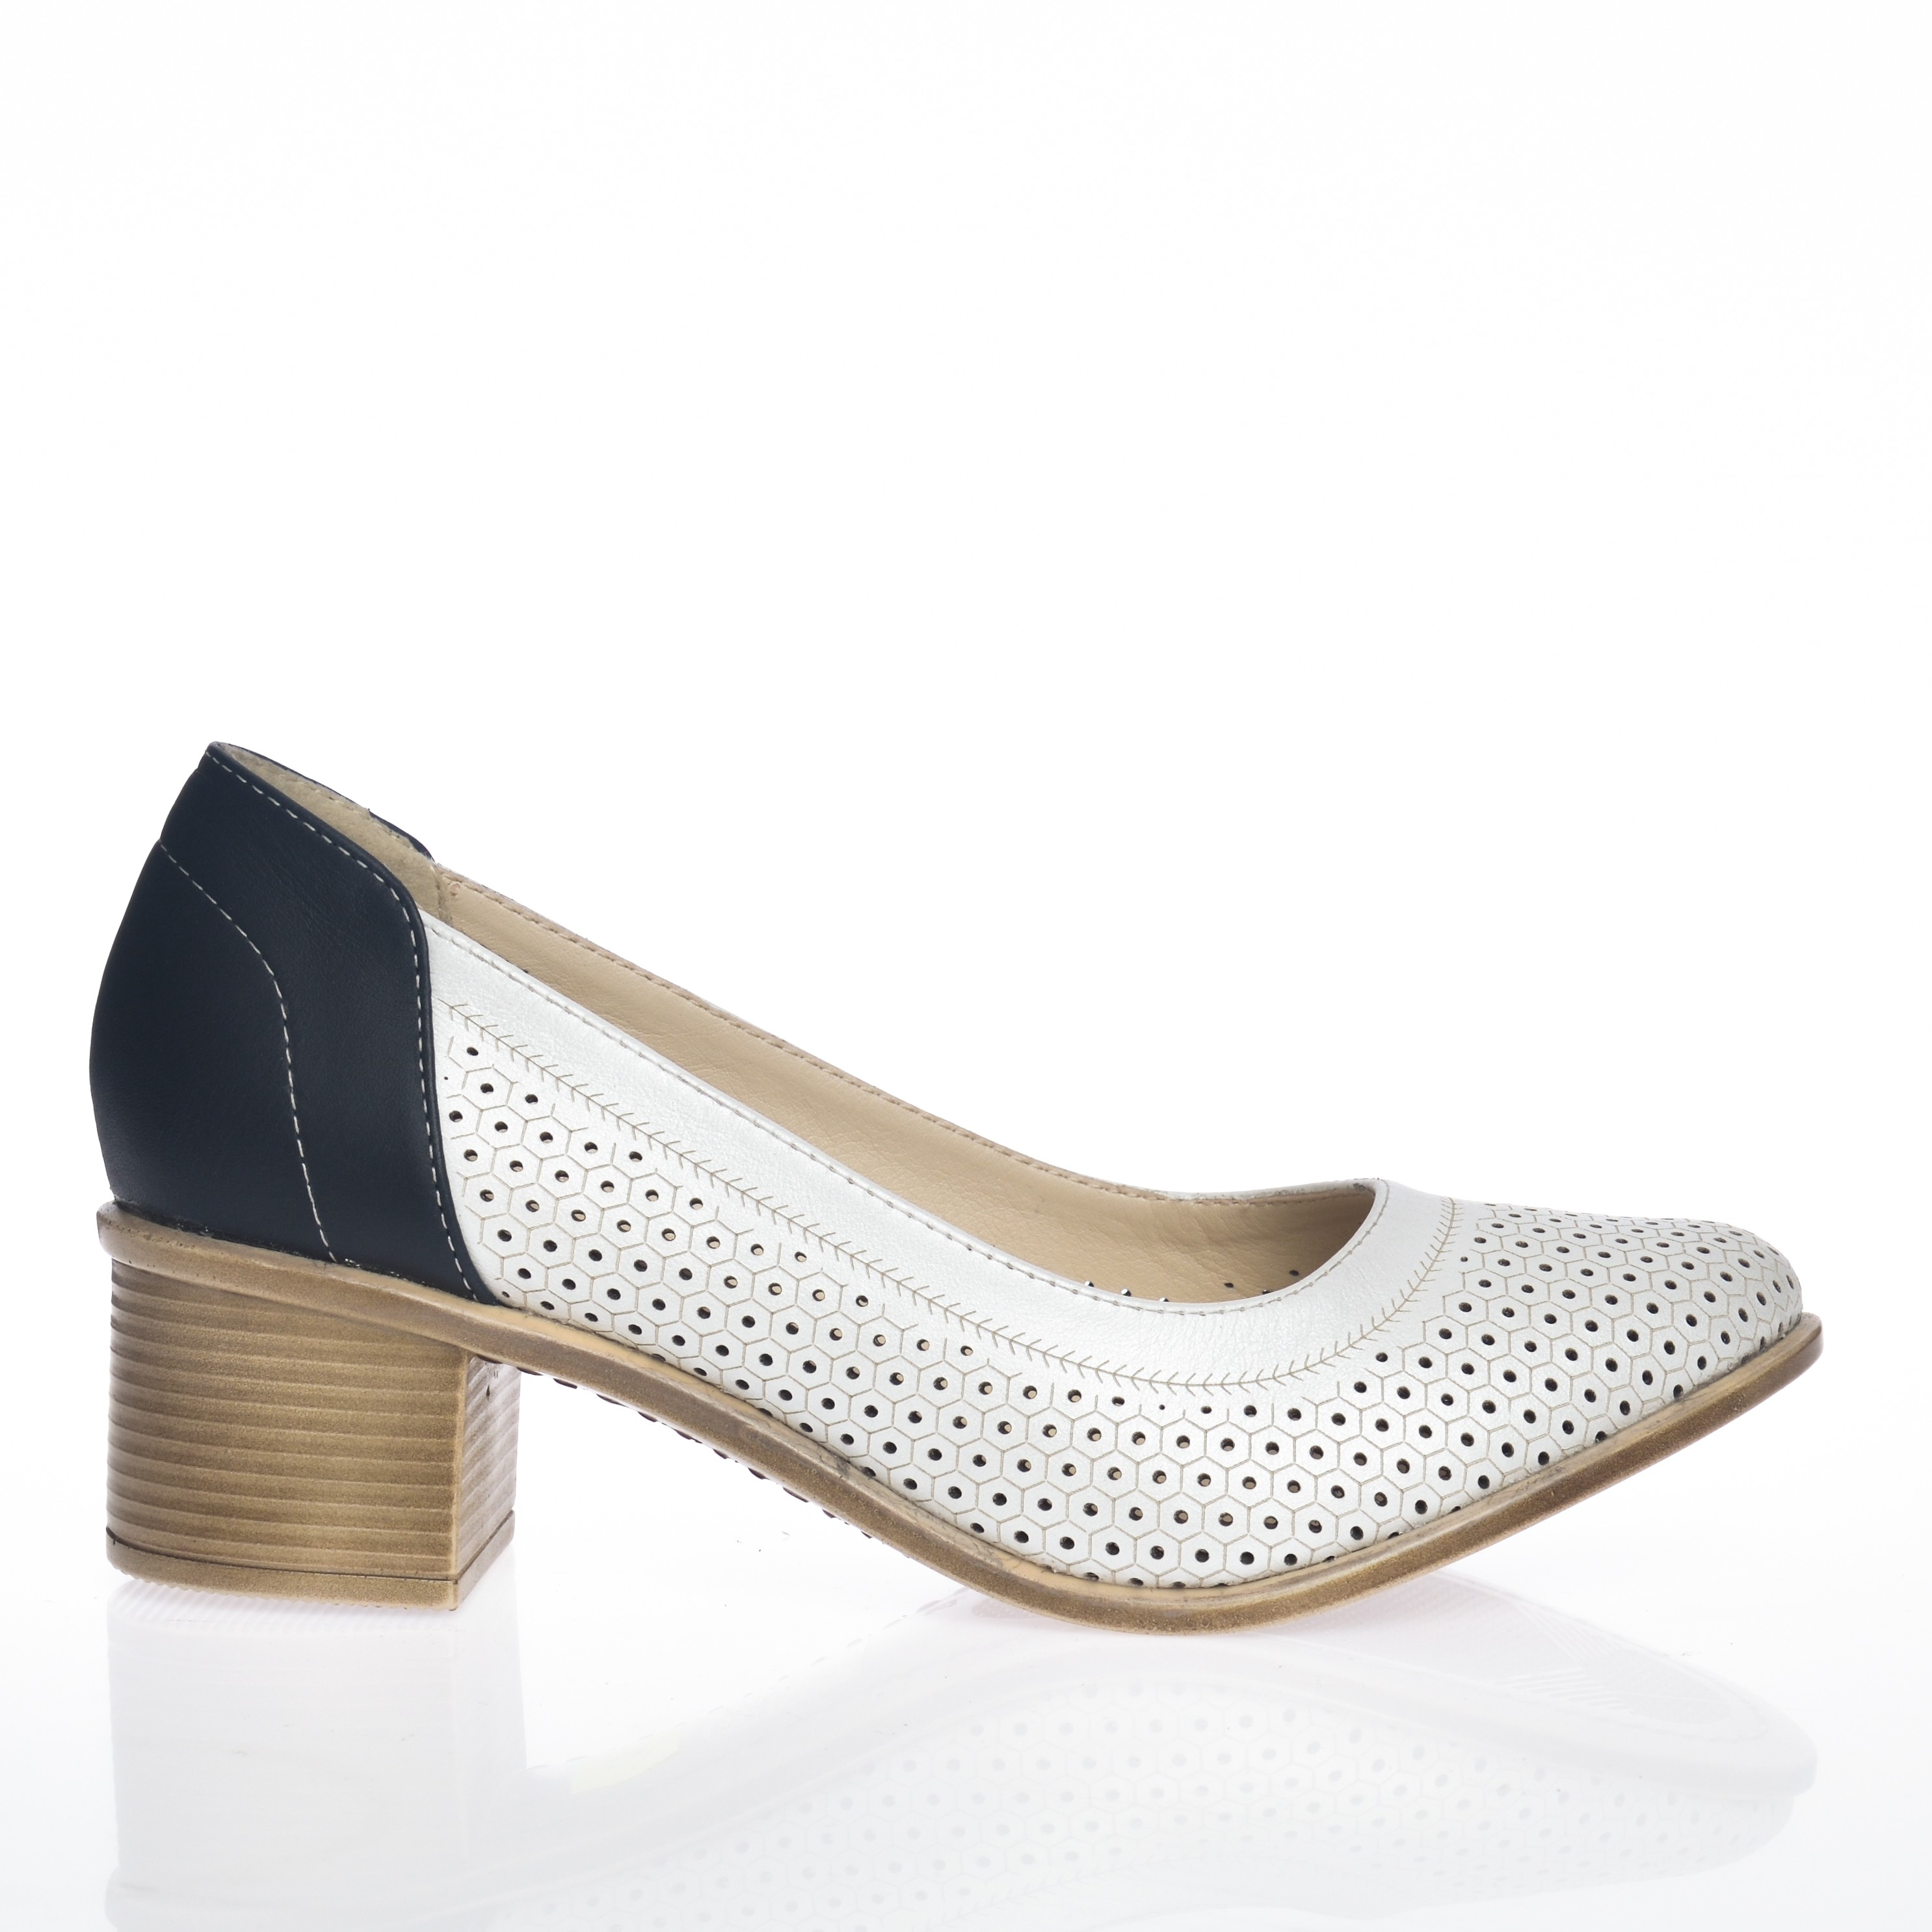 Pantofi dama din piele naturala - Alb cu Bleumarin - T12 AB